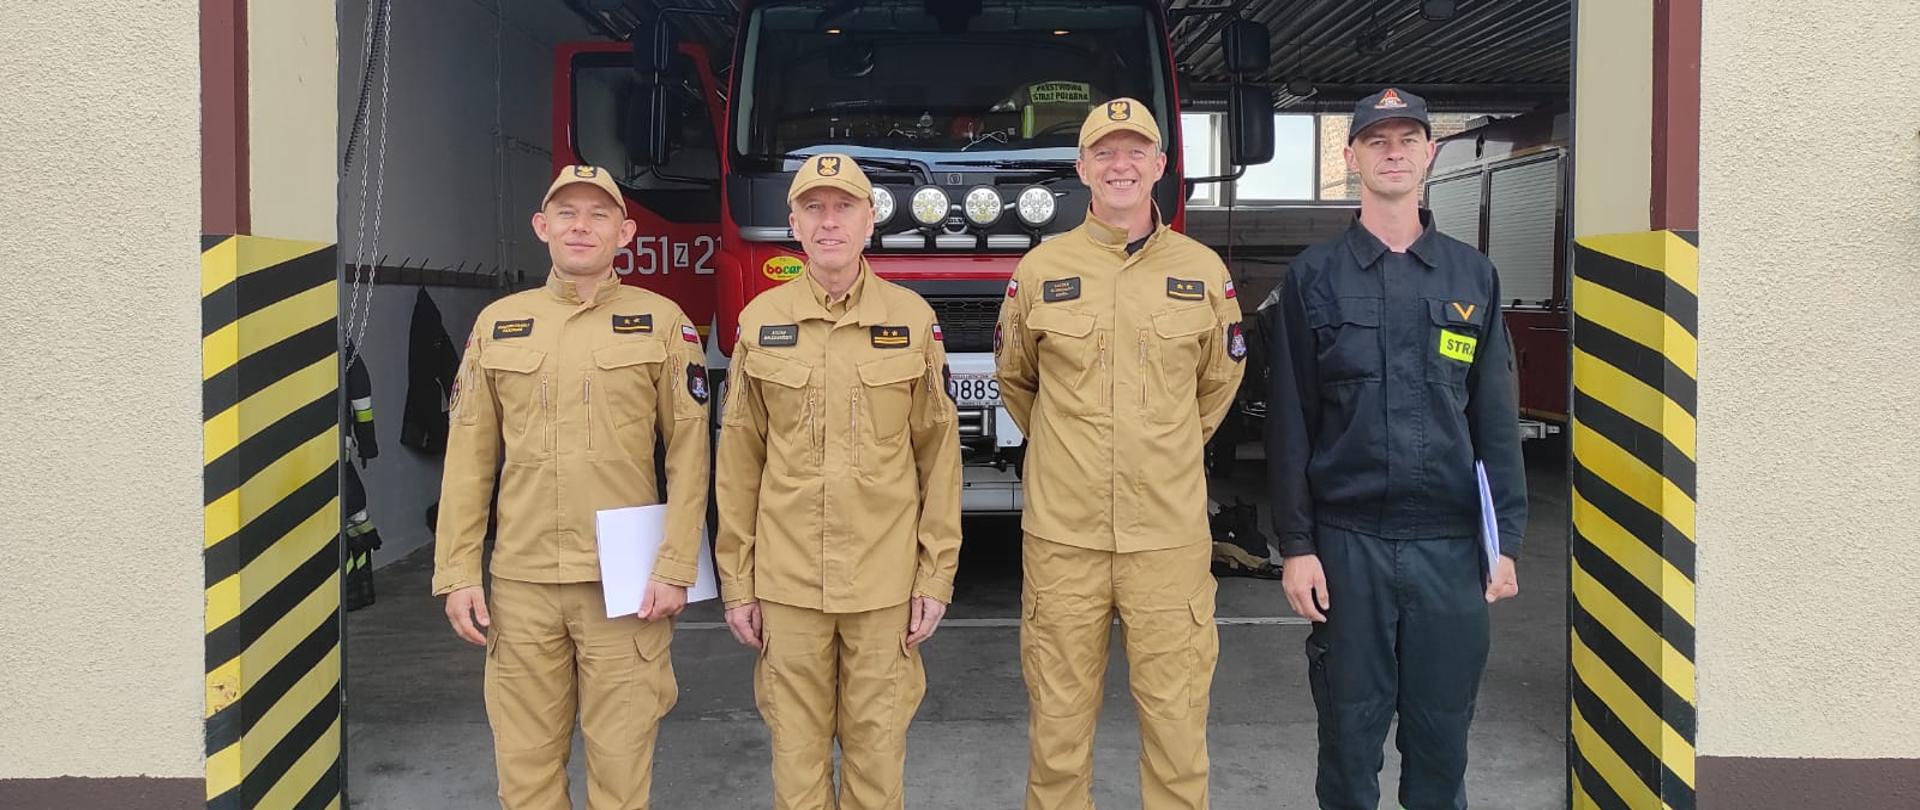 Zdjęcie przedstawia czterech strażaków na tle samochodów ratowniczo-gaśniczego stojącego w garażu.